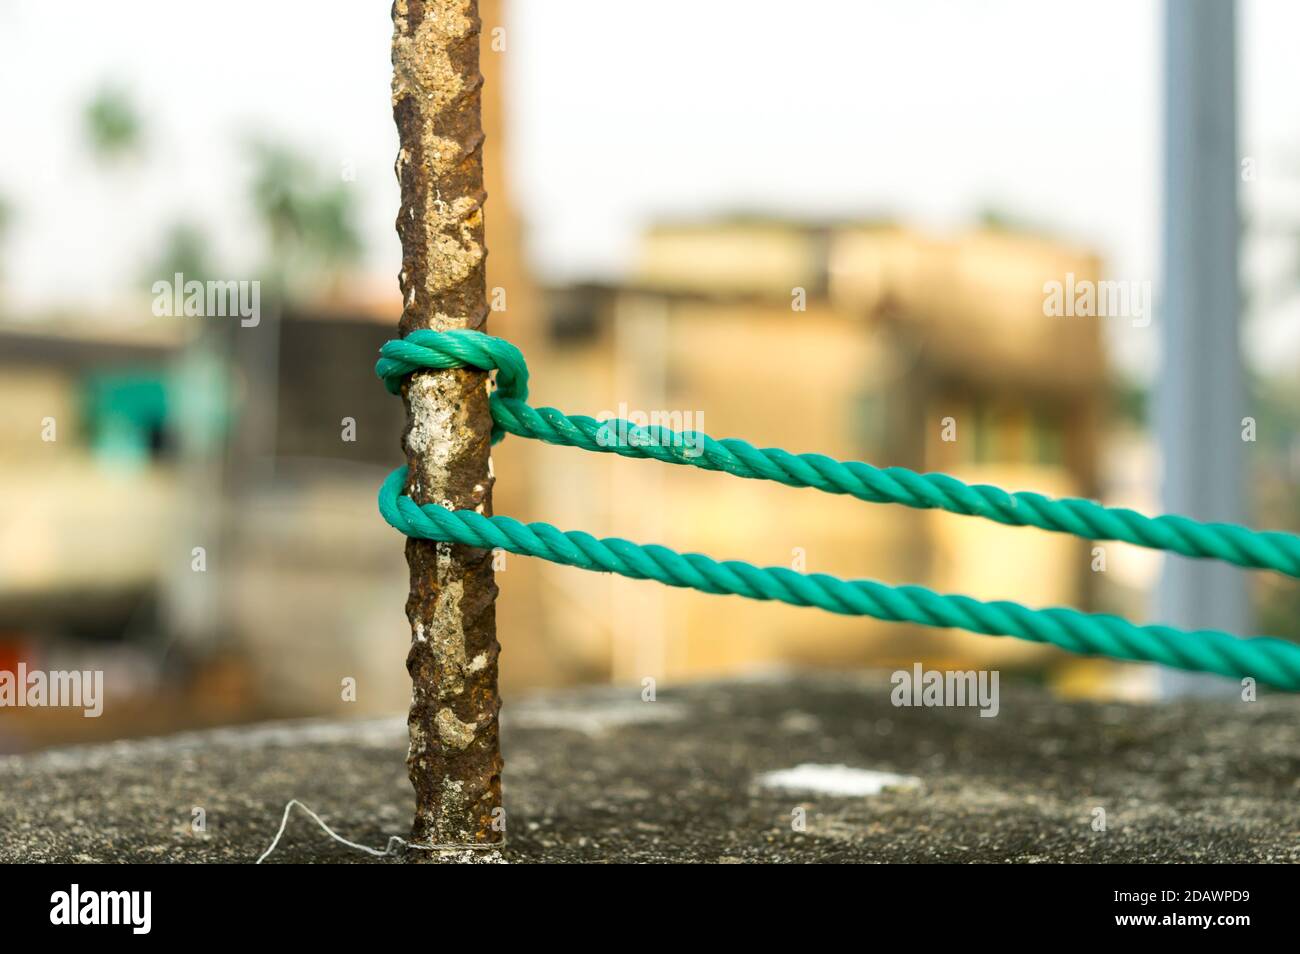 Una cuerda está atada en un nudo alrededor de un poste de la cerca, cuerda atada nudos del enganche en un poste de hierro oxidado aislado del fondo. Foto de stock